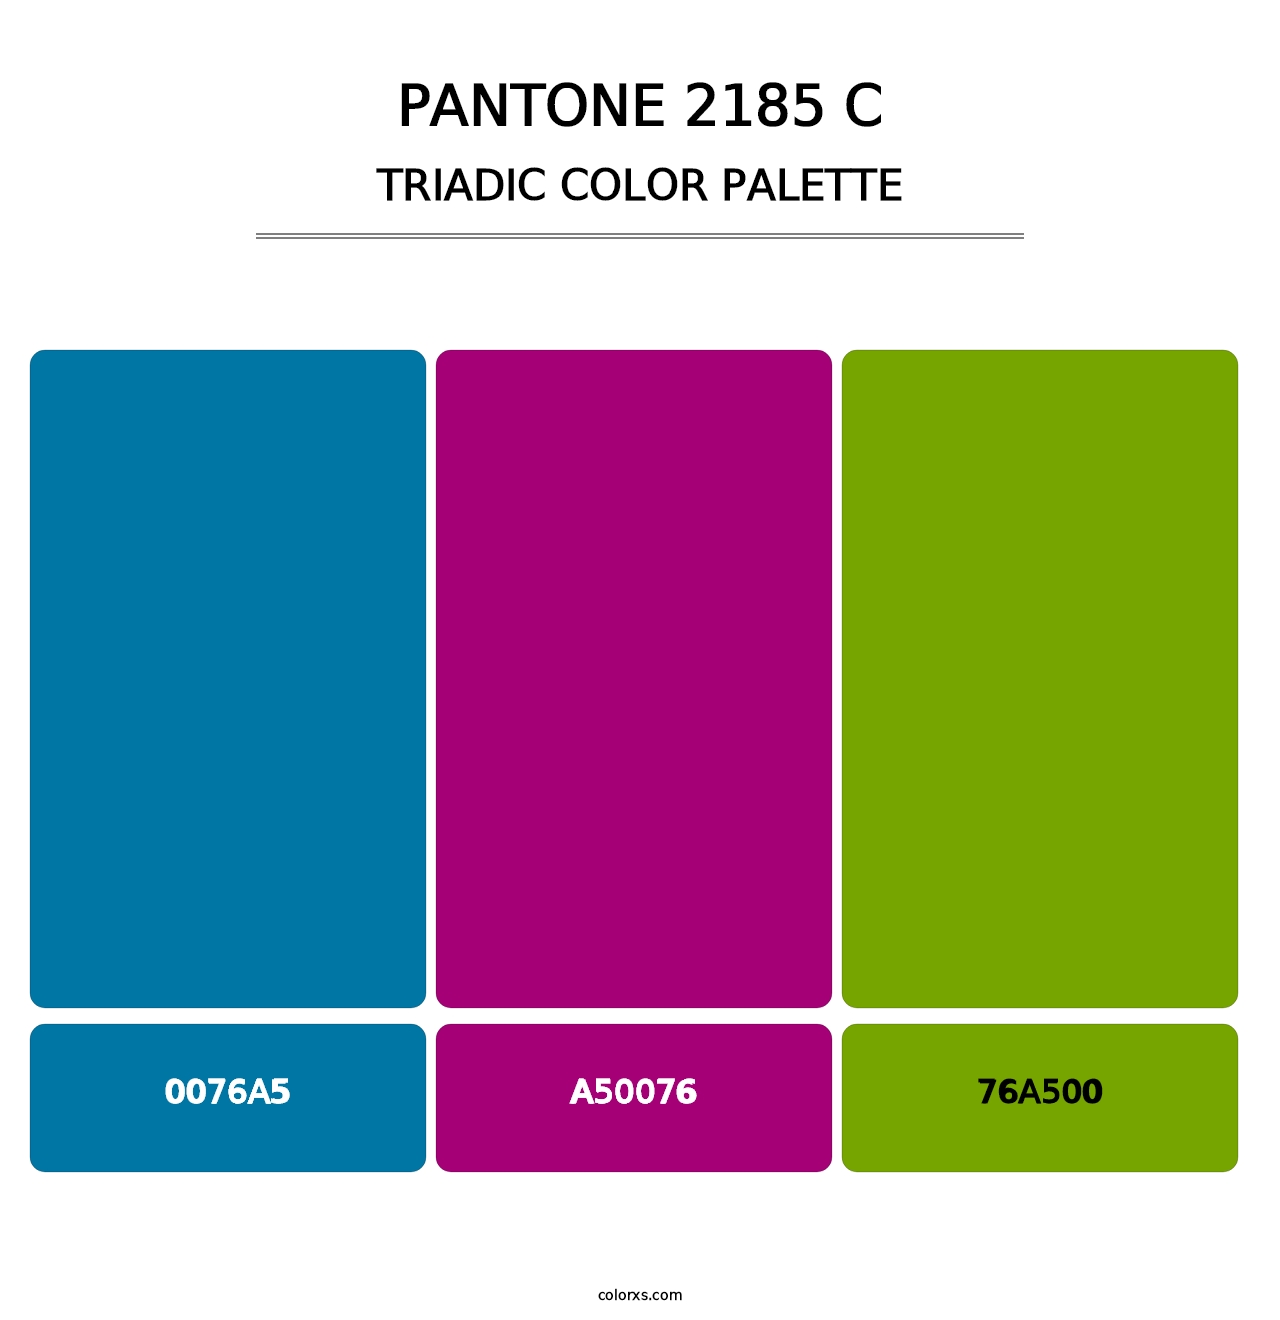 PANTONE 2185 C - Triadic Color Palette